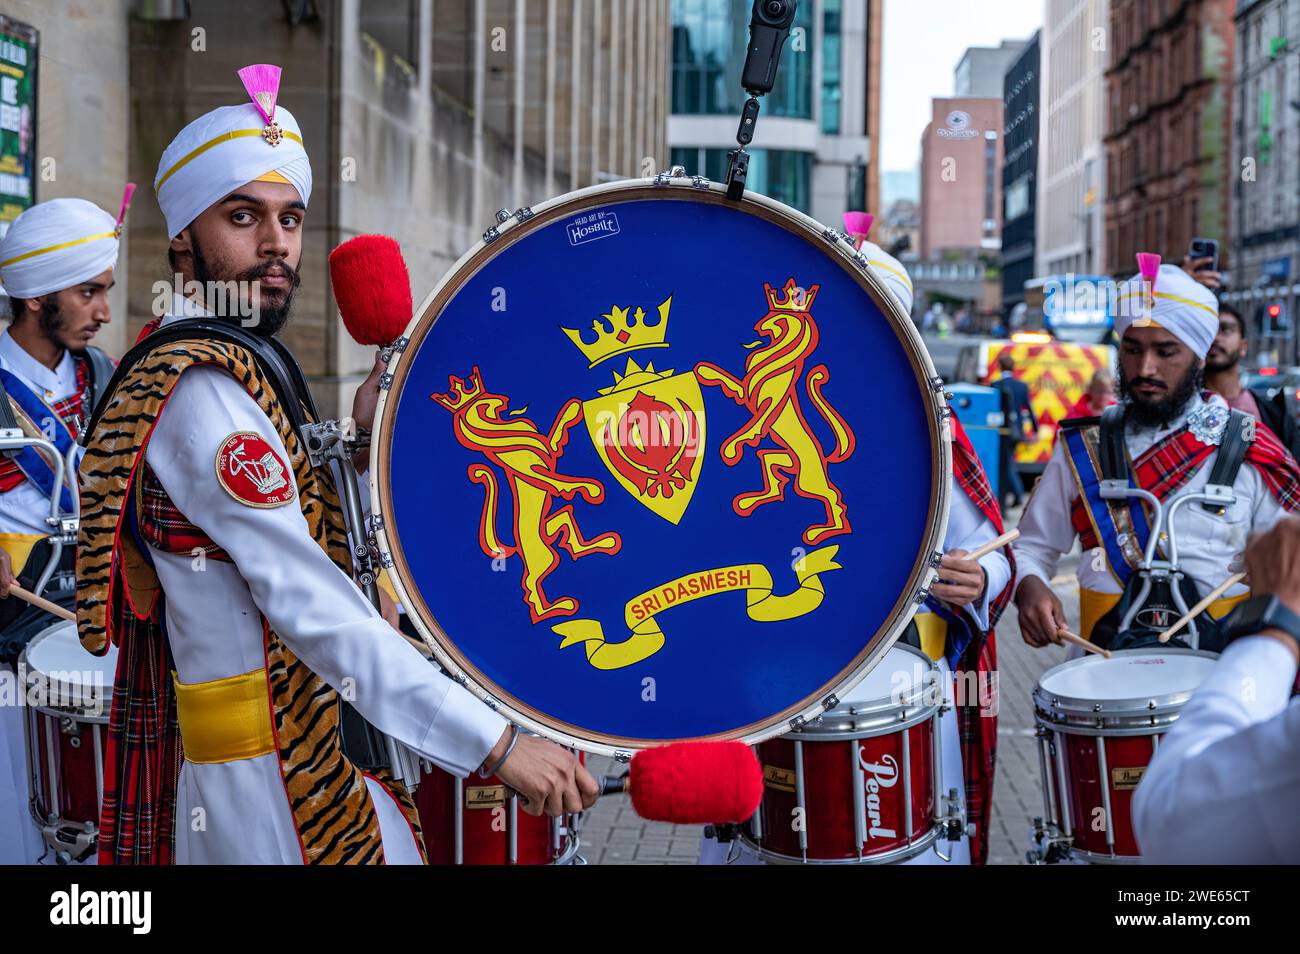 Drummesr della Sri Dasmesh Pipe Band che si pratica fuori dalla Glasgow Royal Concert Hall durante la settimana dei Campionati del mondo di Pipe Band. Foto Stock